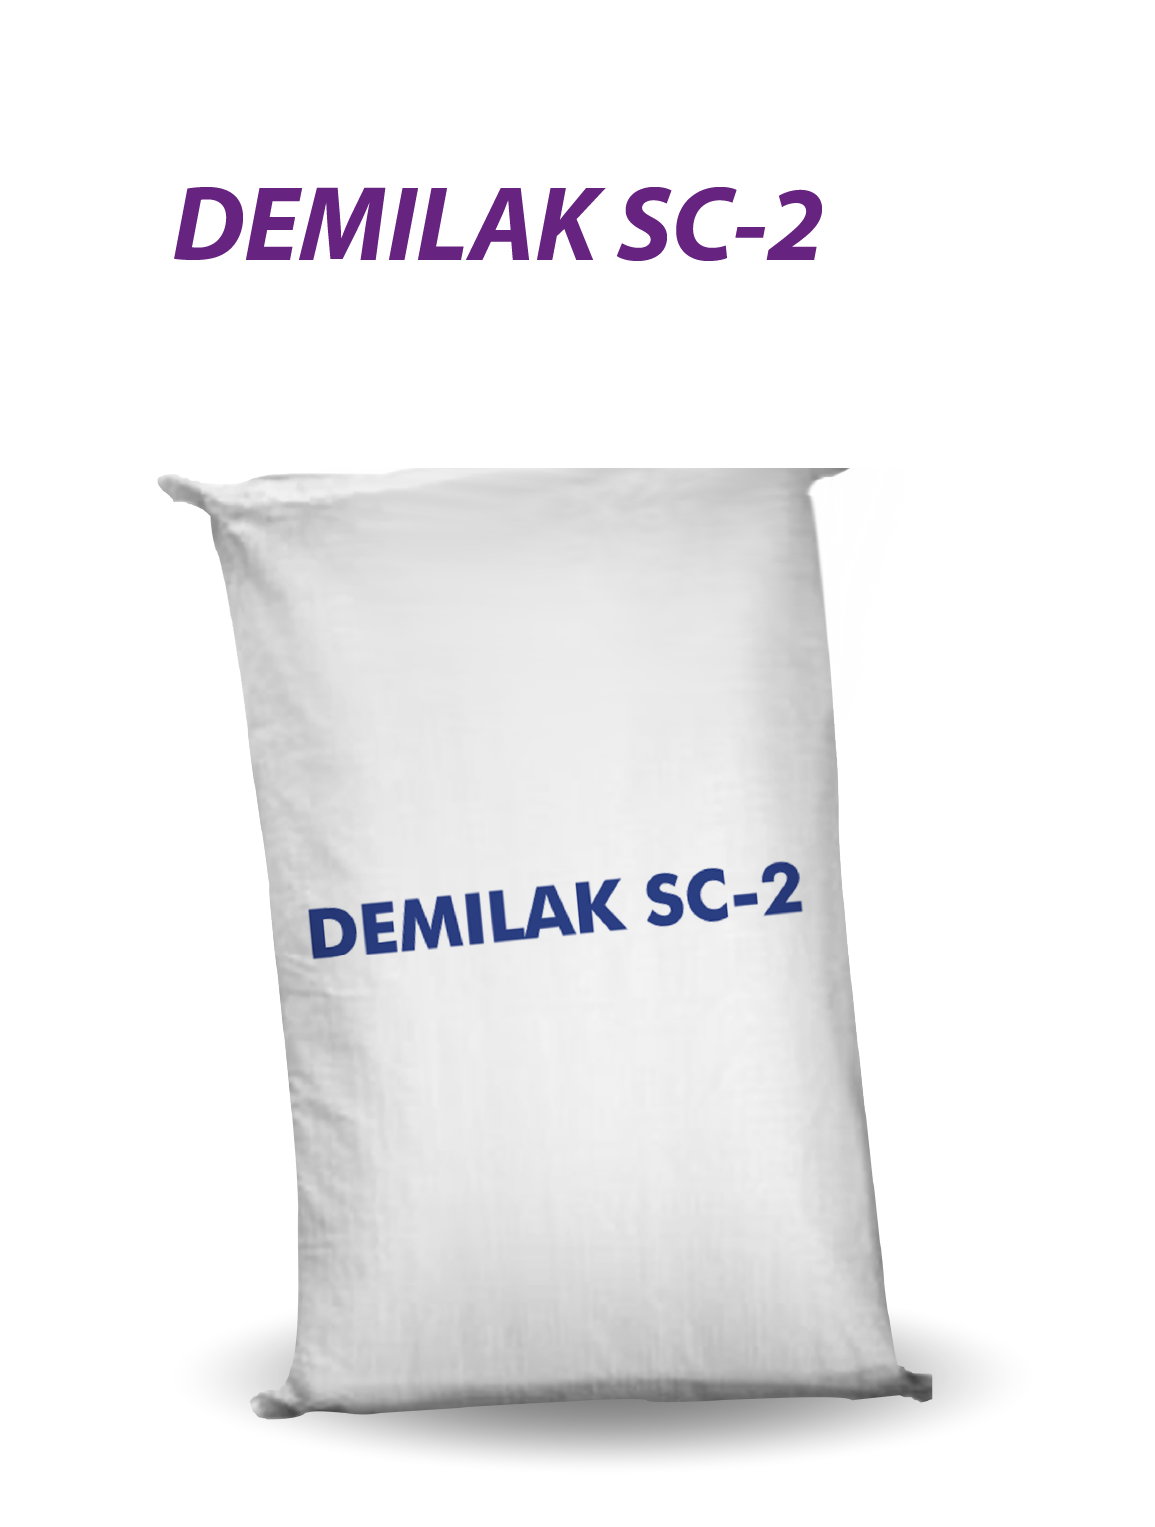 DEMILAK SC-2